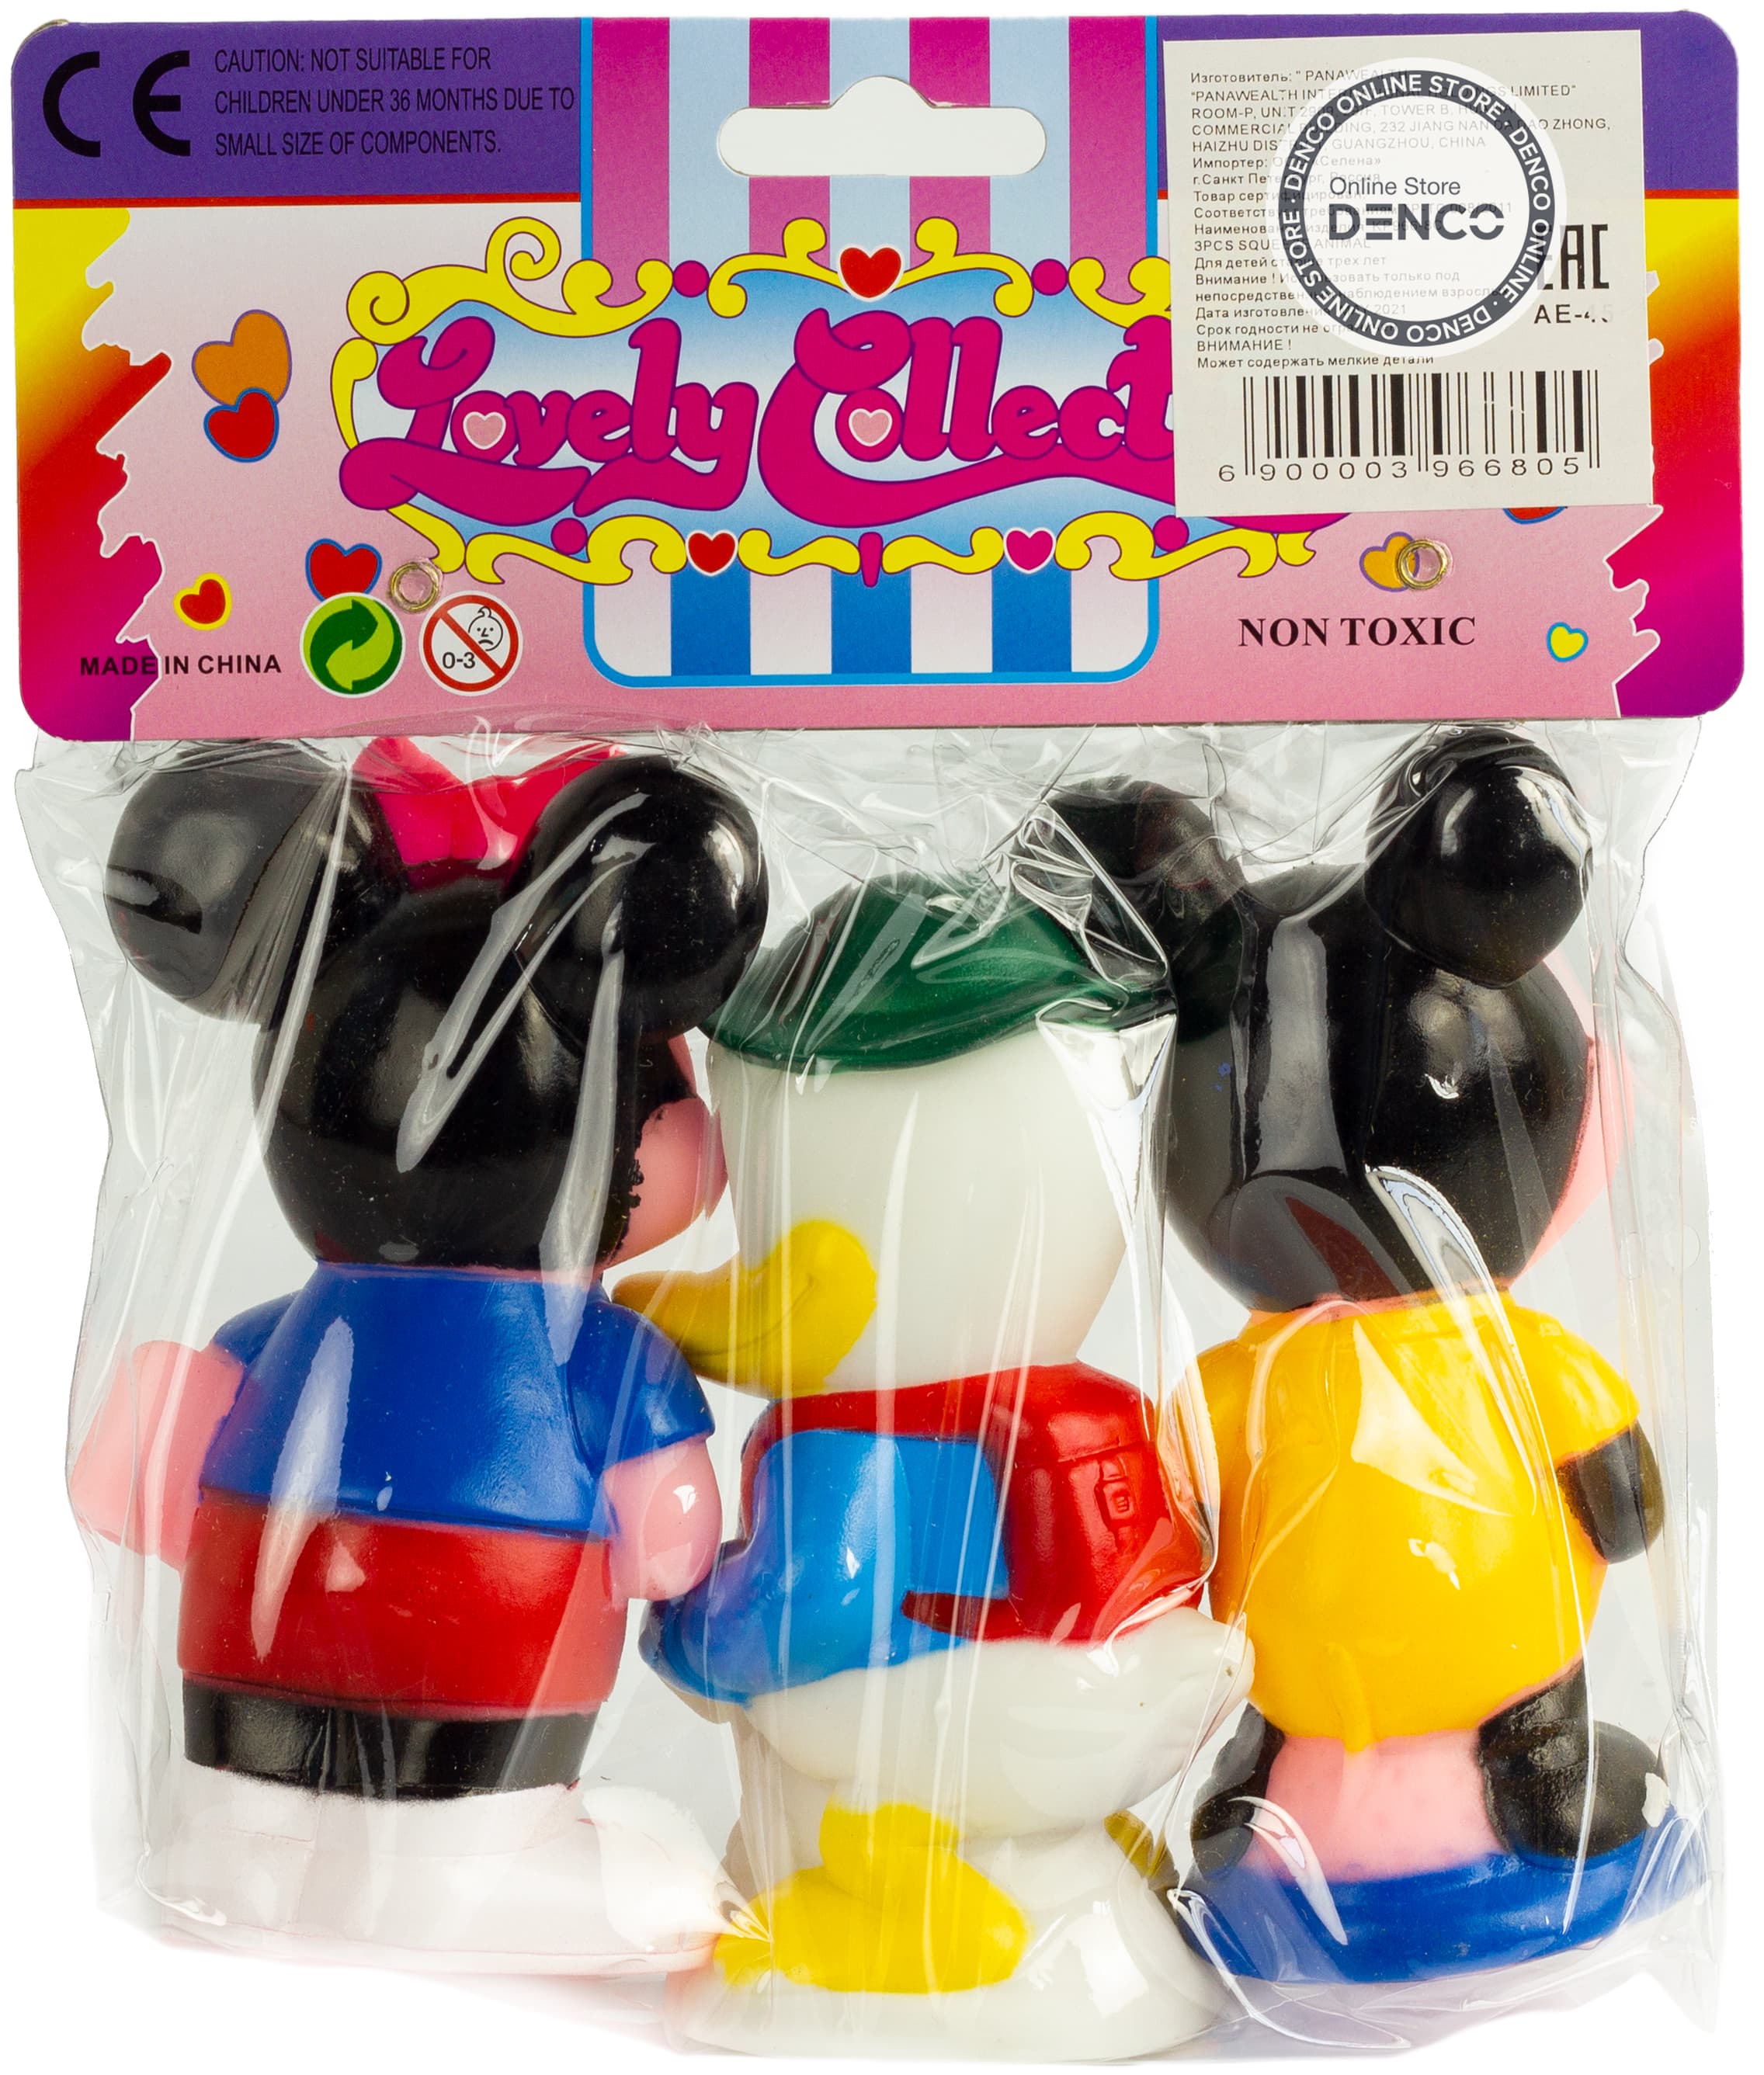 Резиновые игрушки-пищалки для ванны «Микки-Маус и компания», 966-8C / 3 шт.